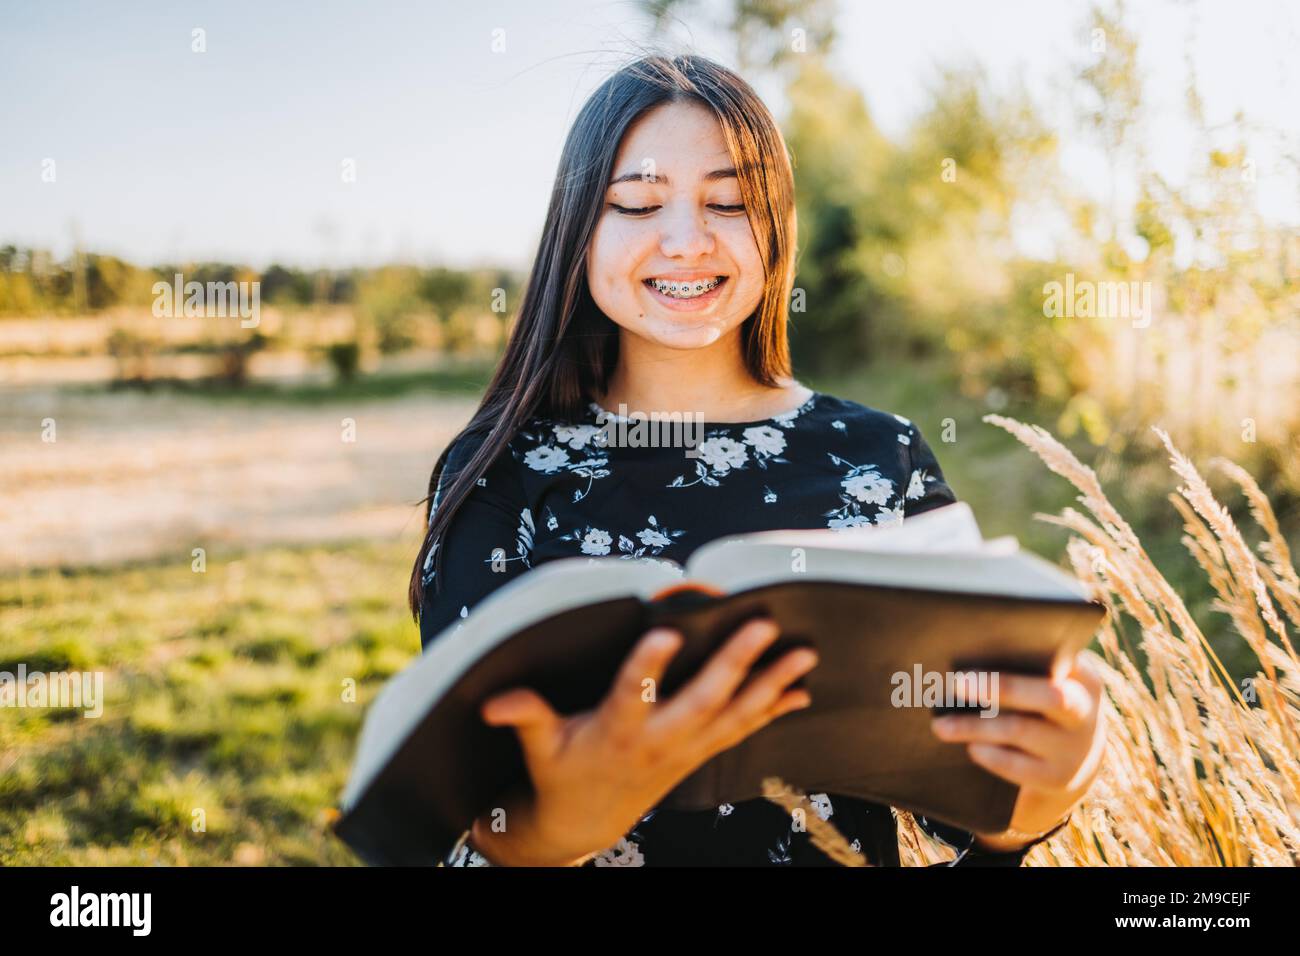 Jeune fille religieuse innocente avec des accolades étudiant la bible, à l'extérieur dans le champ au coucher du soleil. Renouveau spirituel Banque D'Images